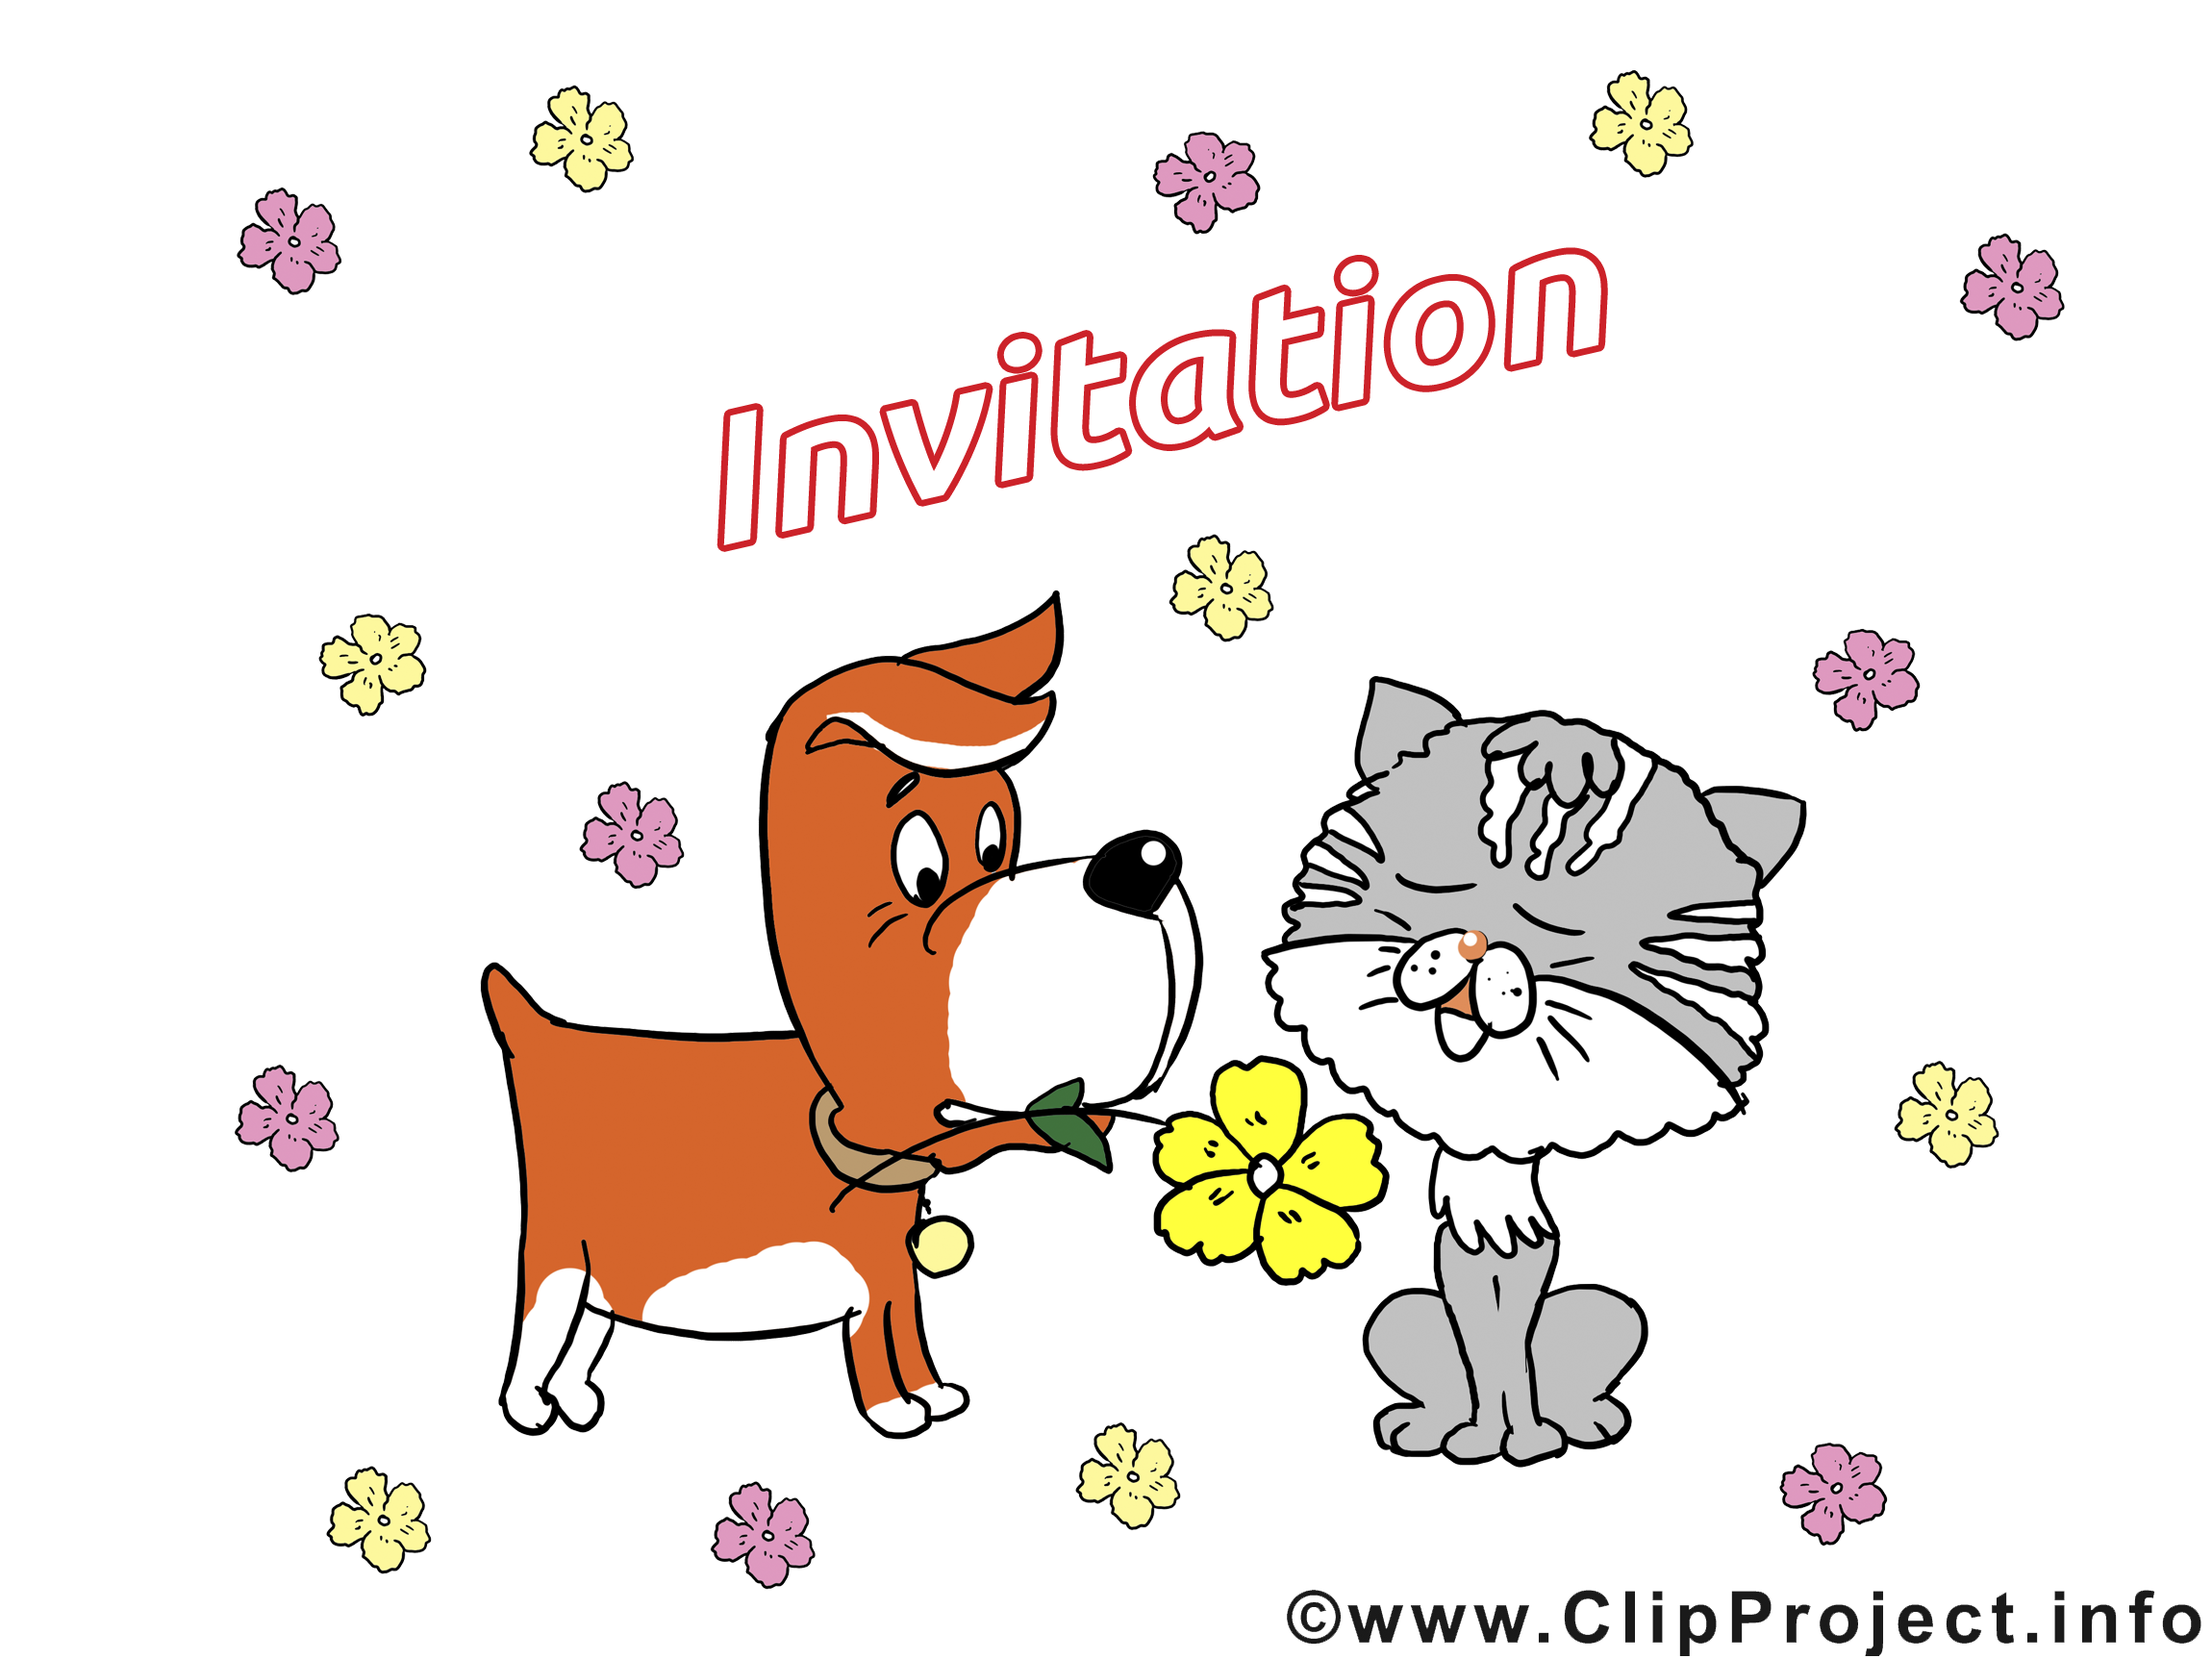 clipart gratuit invitation - photo #24